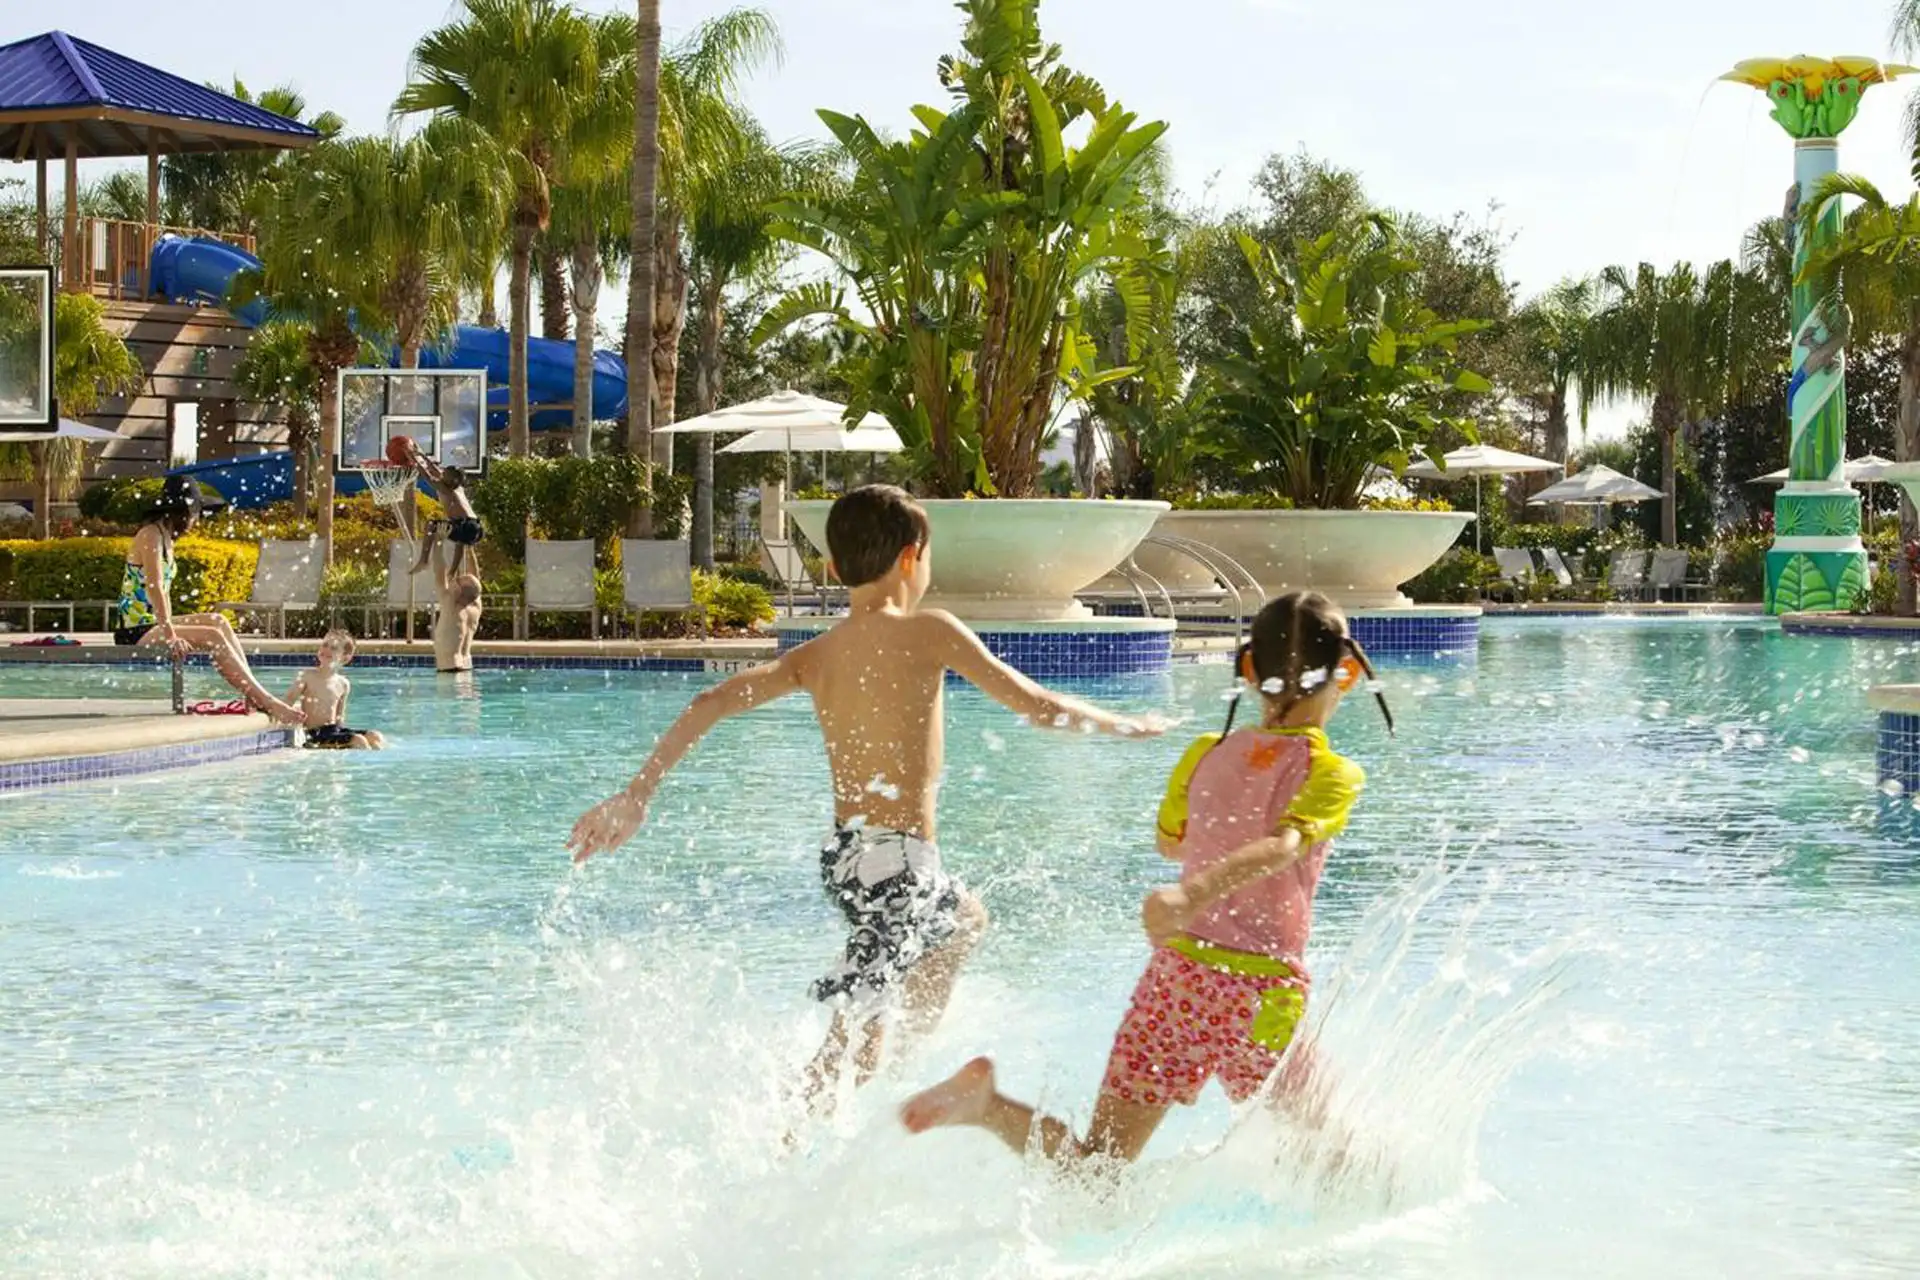 Kids Splashing in Pool at Hilton Orlando